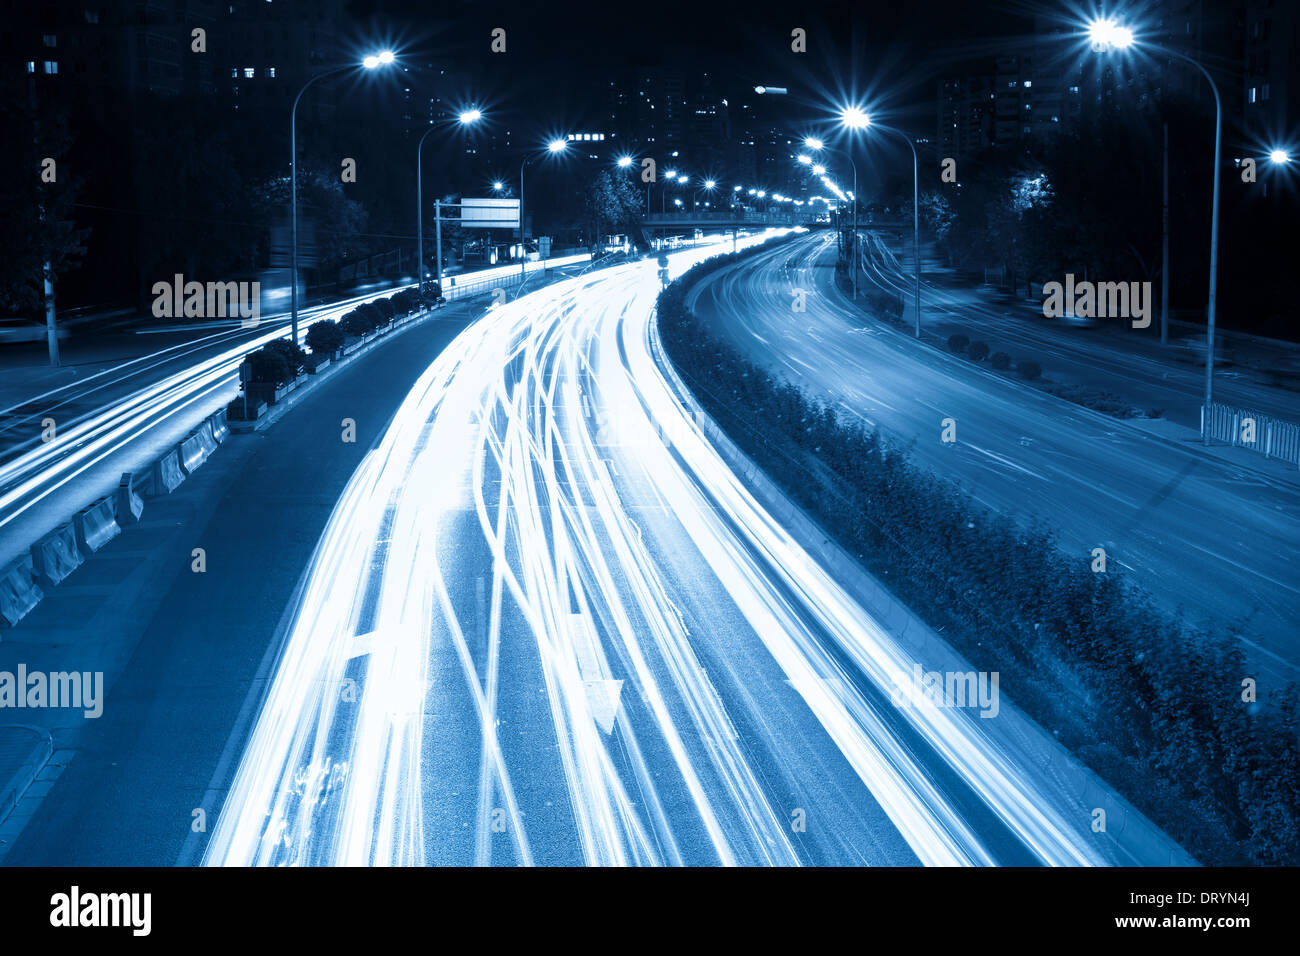 rush hour traffic at night Stock Photo